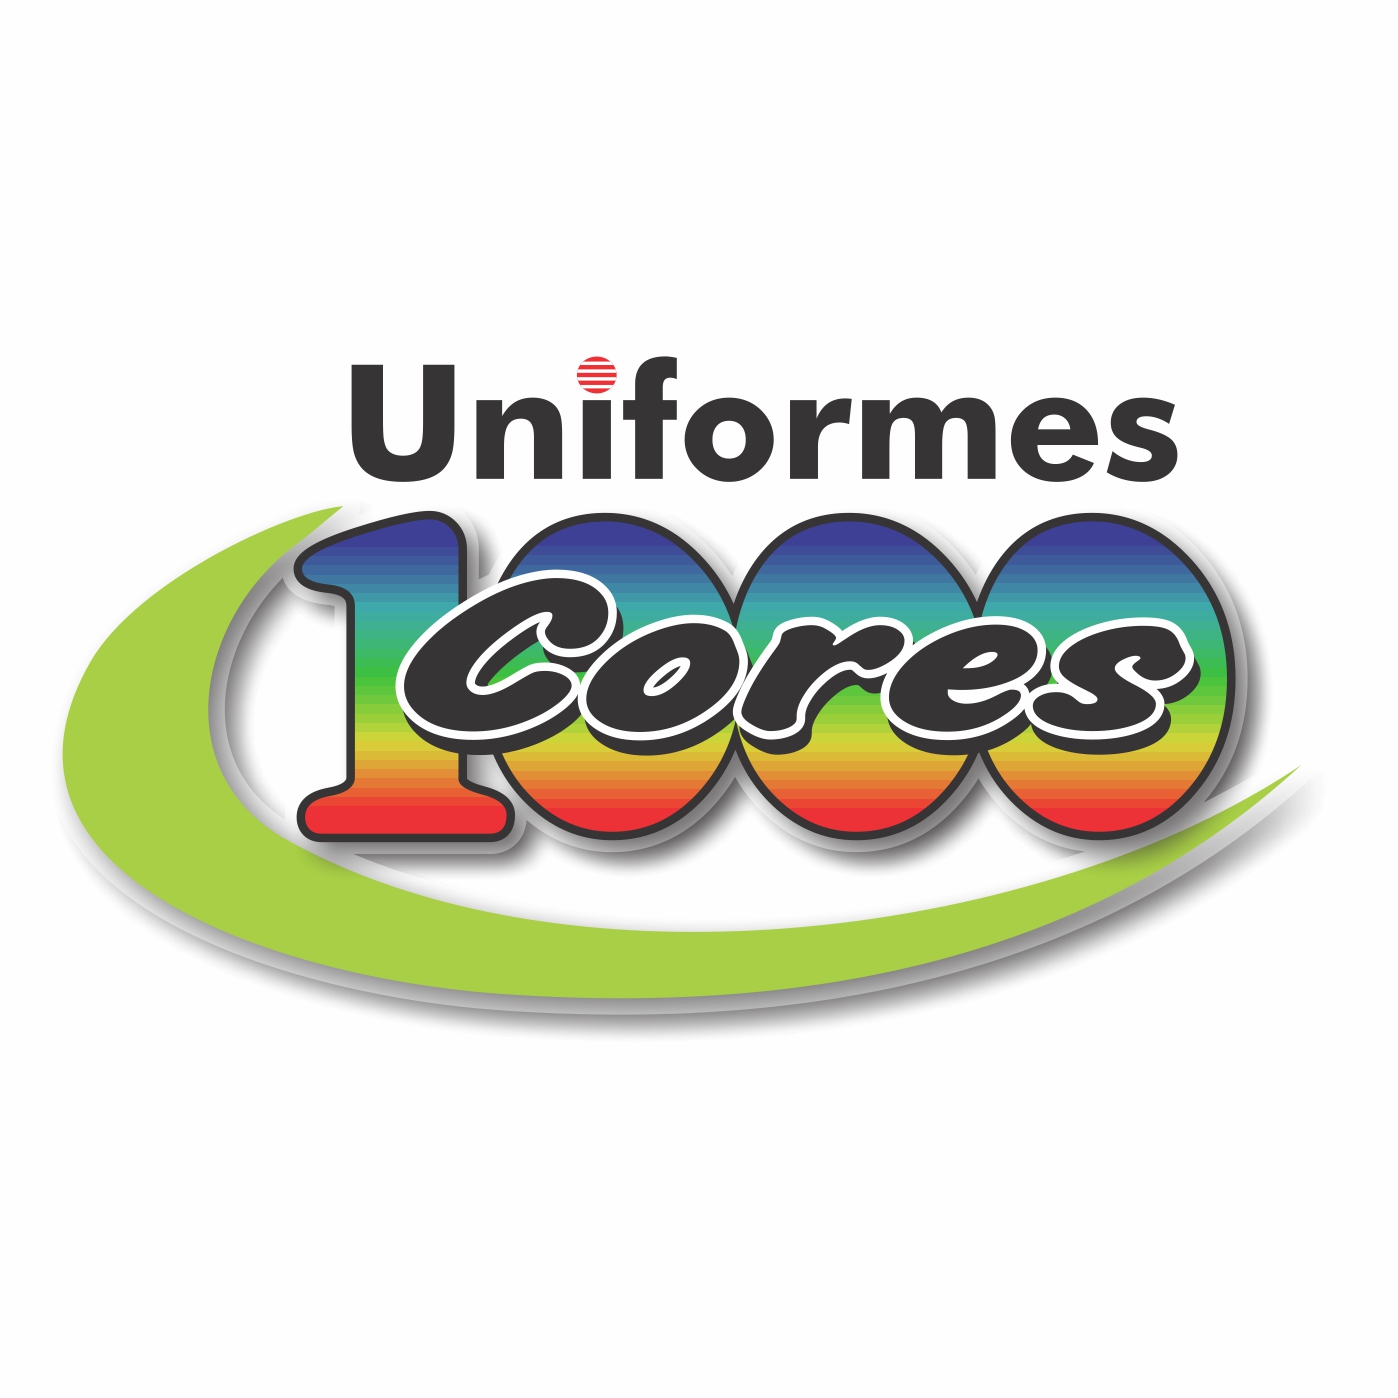 Uniformes 1000 cores